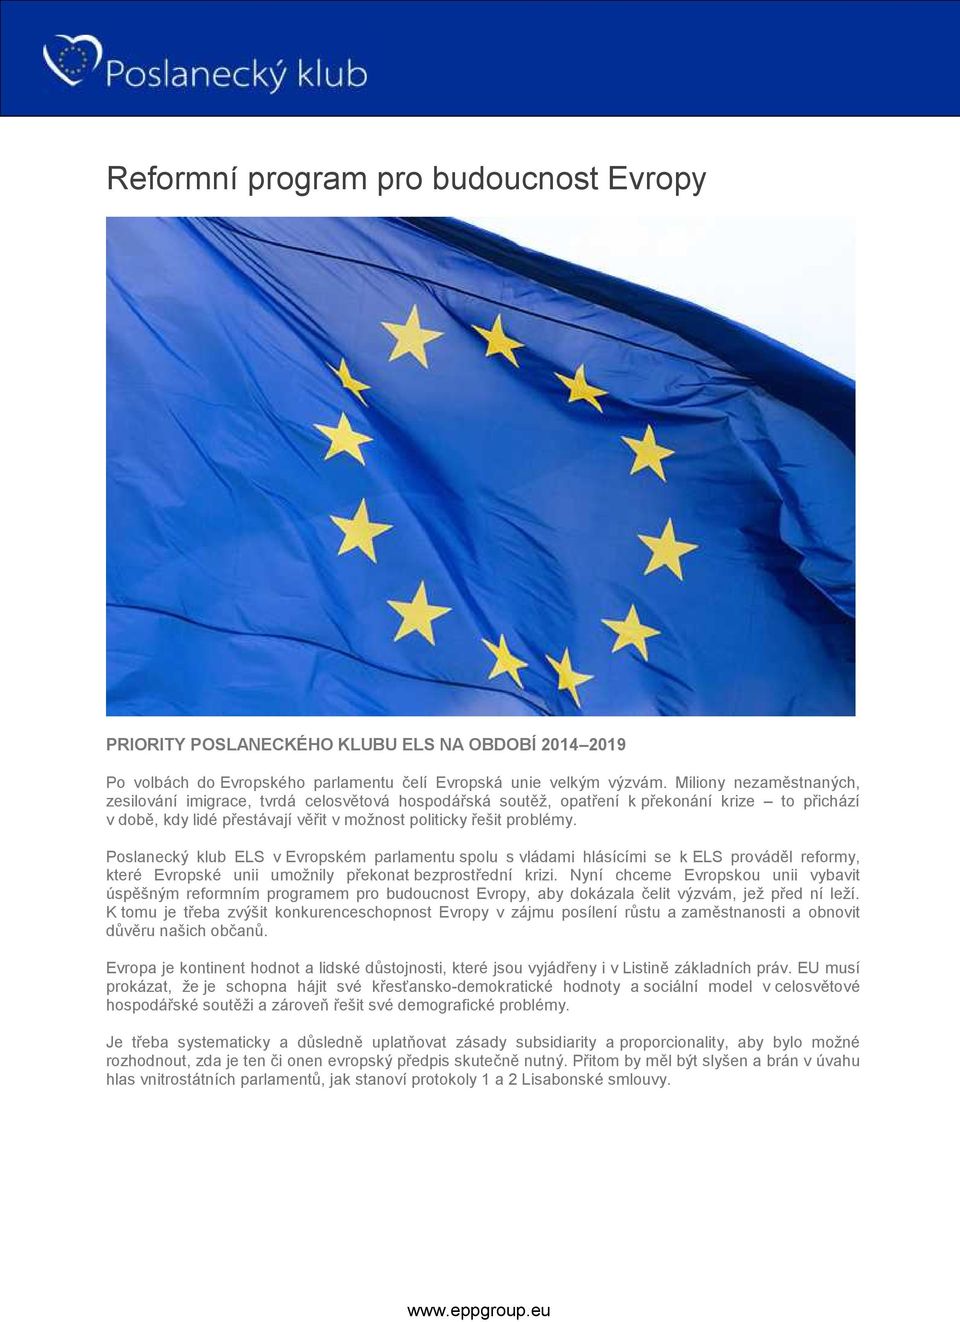 Poslanecký klub ELS v Evropském parlamentu spolu s vládami hlásícími se k ELS prováděl reformy, které Evropské unii umožnily překonat bezprostřední krizi.